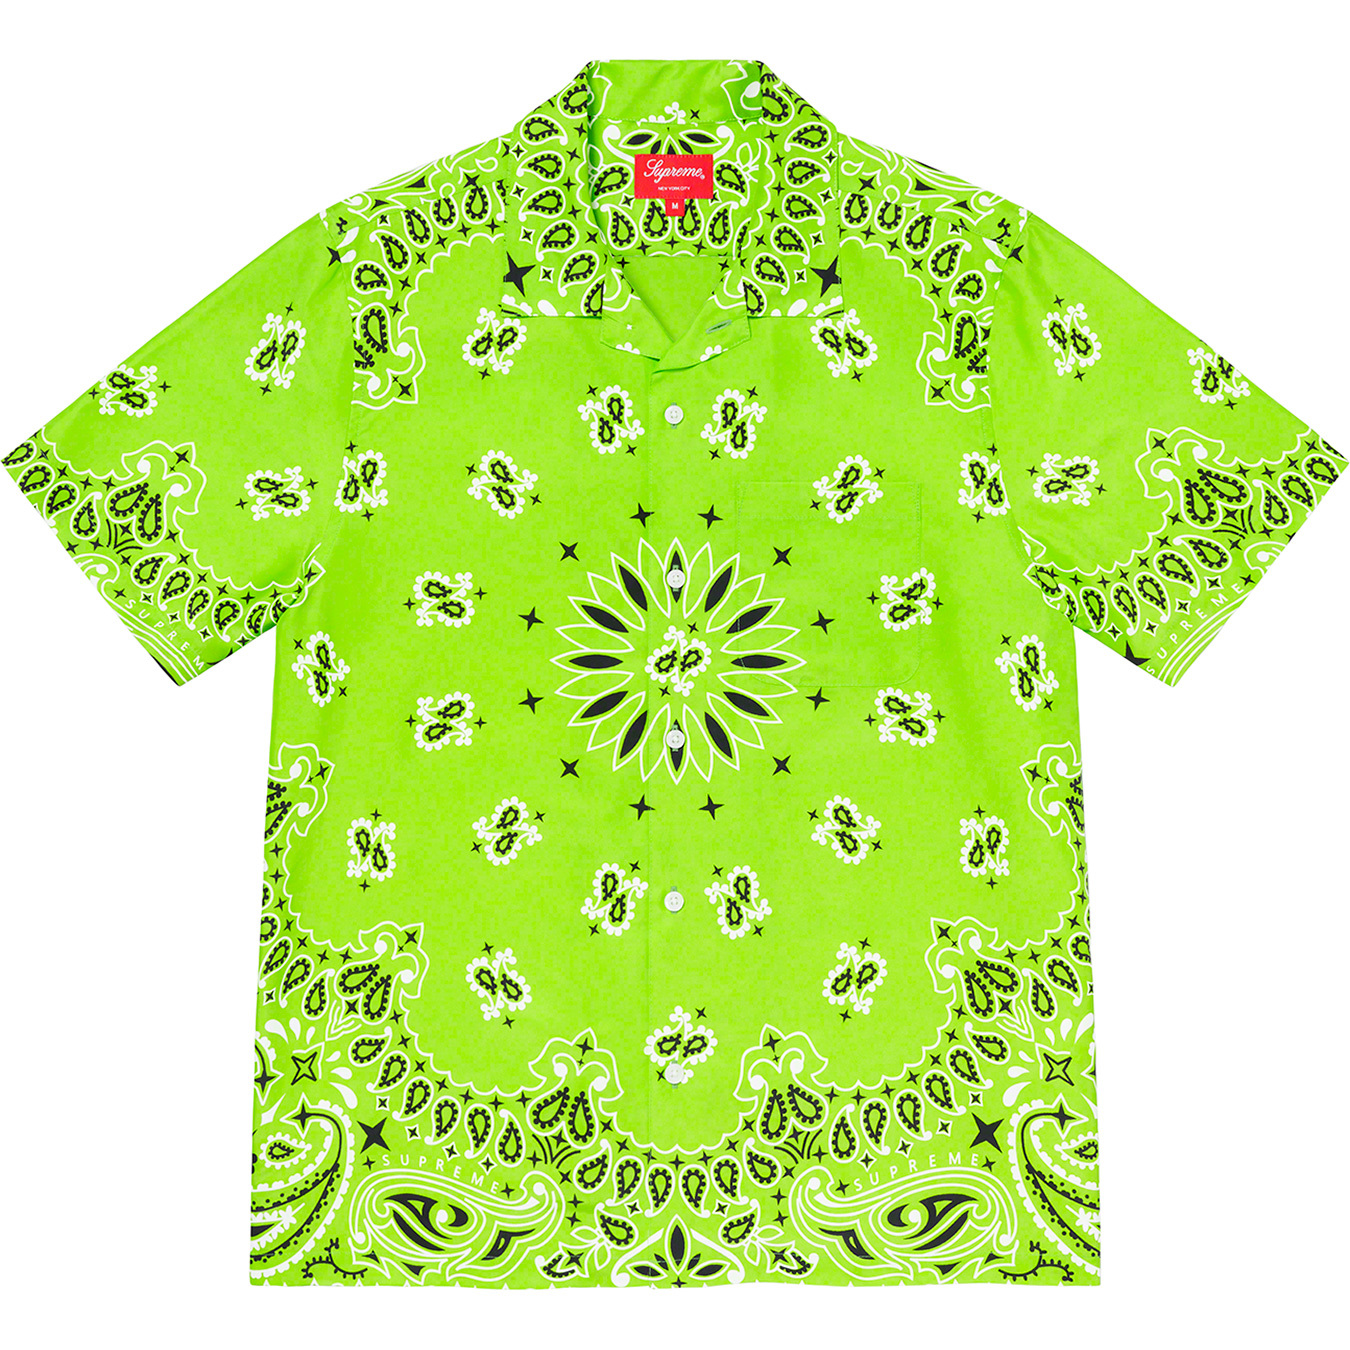 Bandana Silk S S Shirt - spring summer 2021 - Supreme